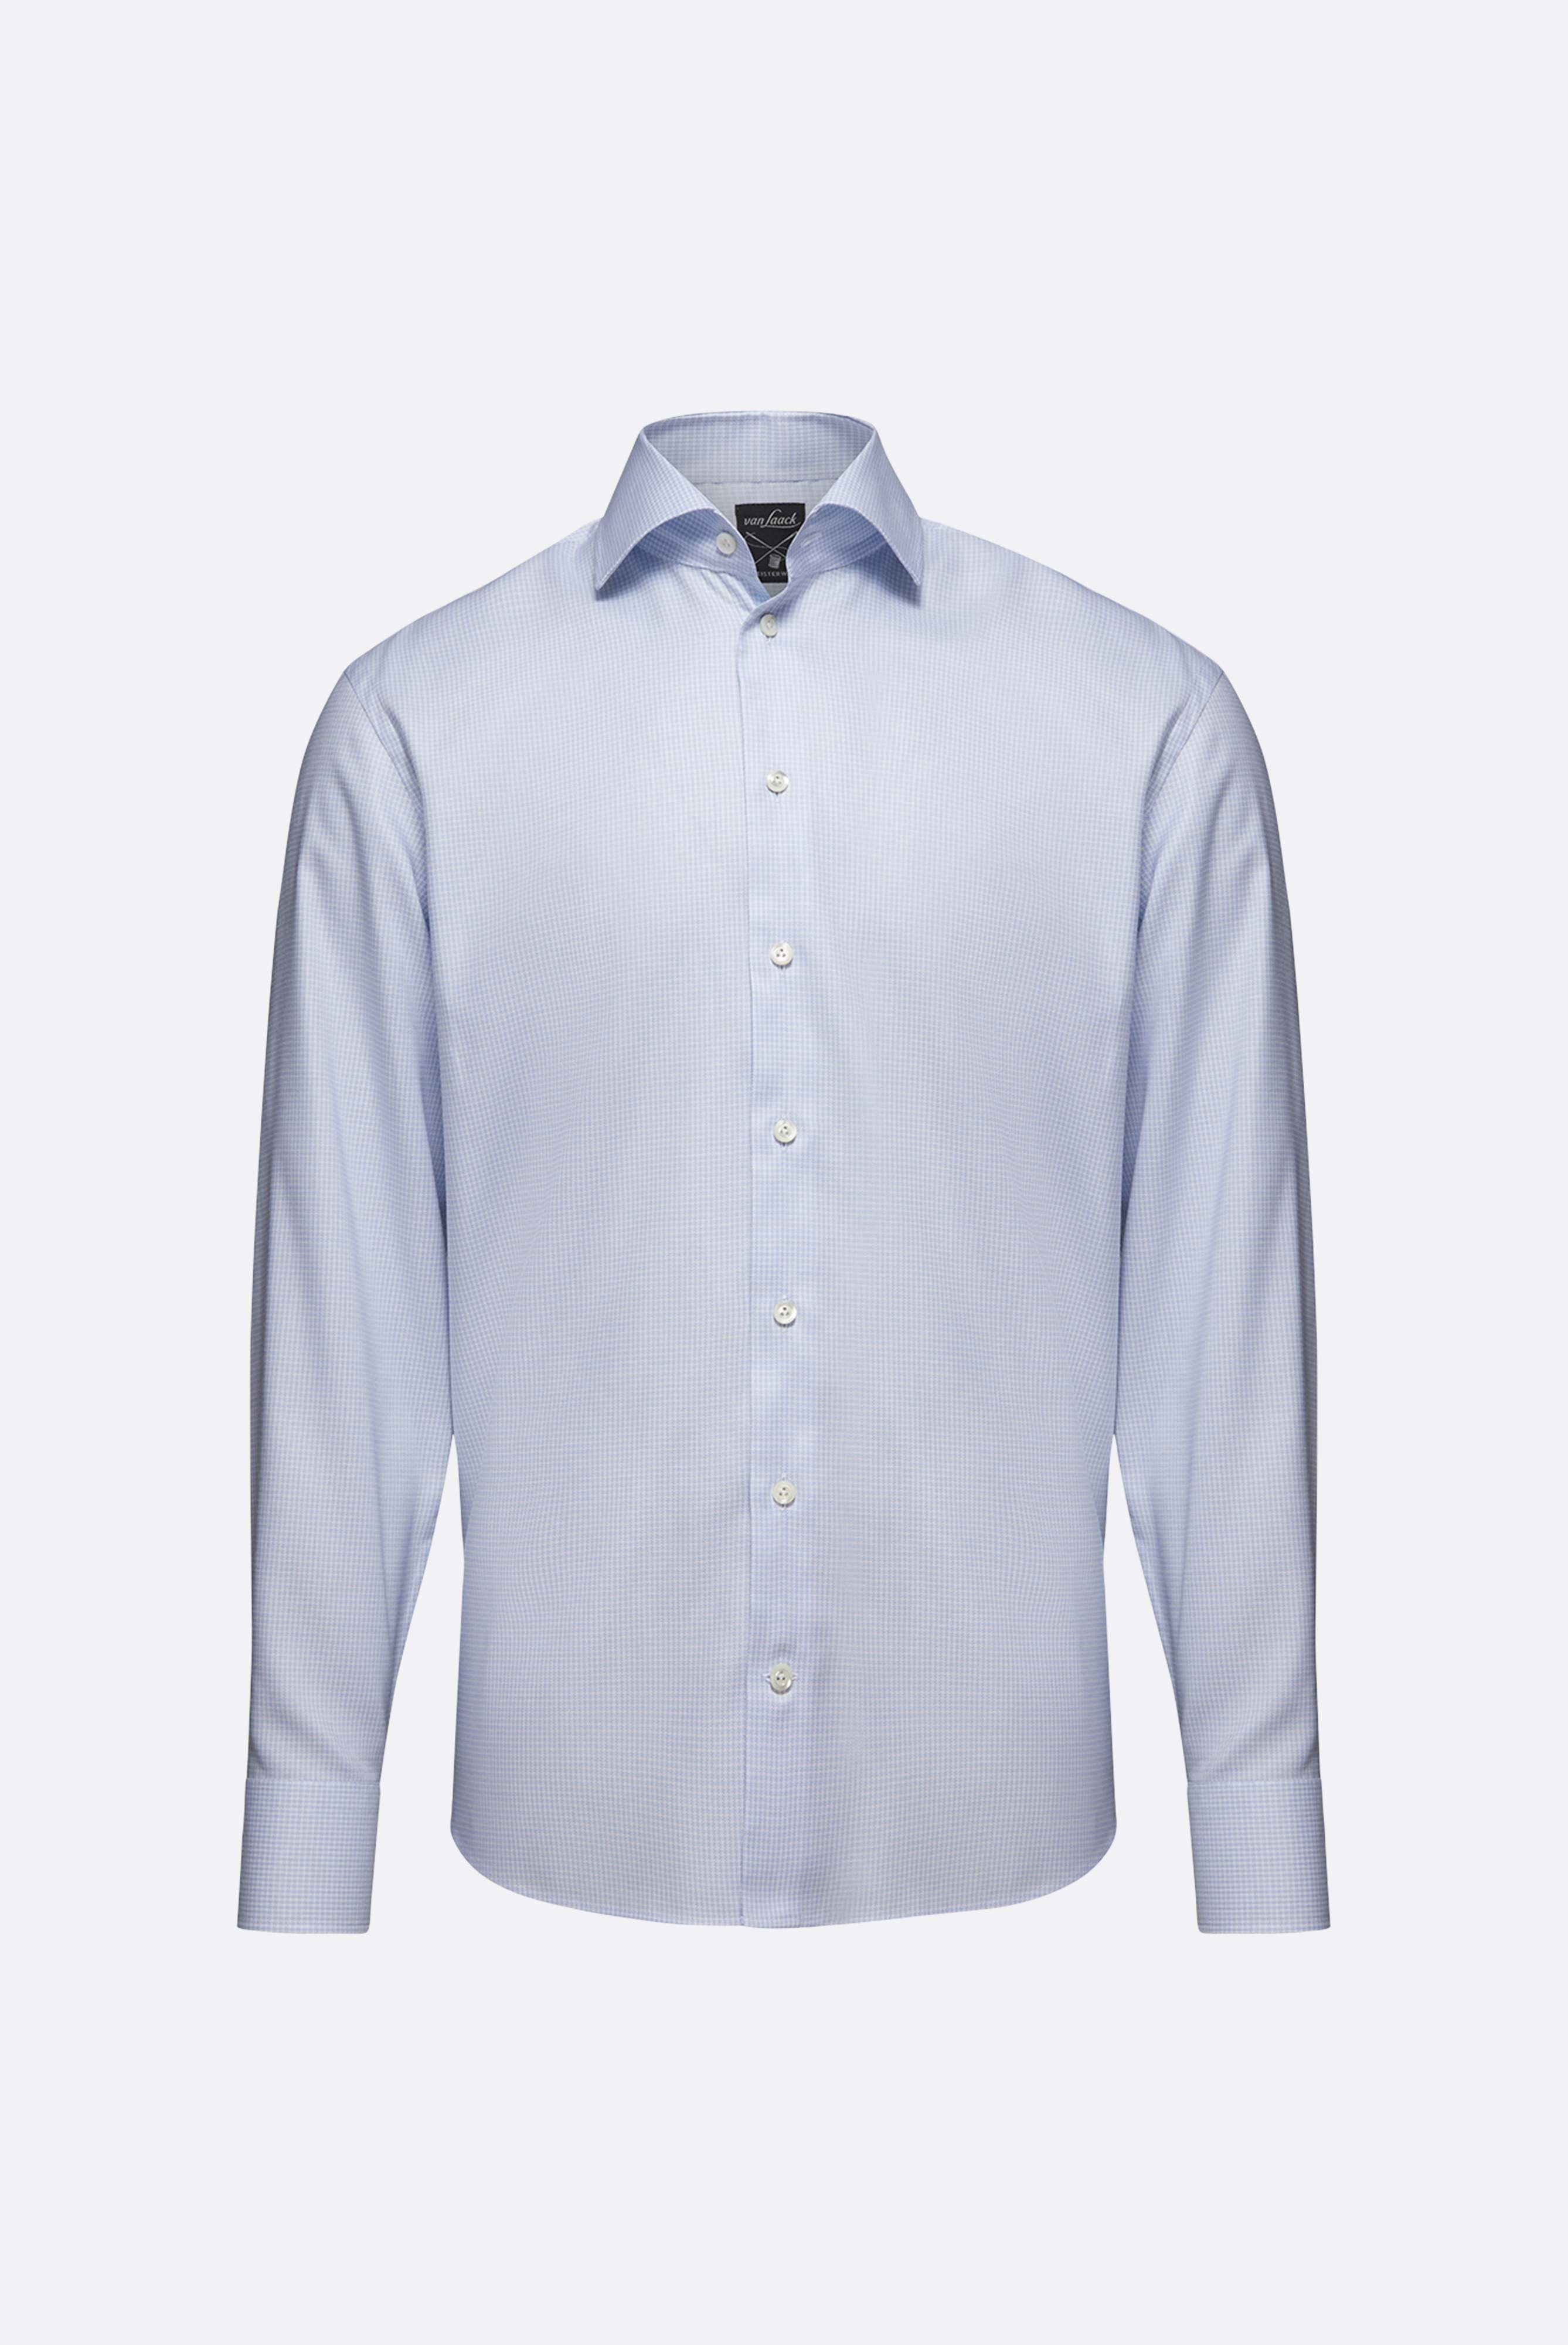 Bügelleichte Hemden+Bügelfreies Hemd mit Hahnentrittmuster Comfort Fit+20.2021.BQ.161101.720.40